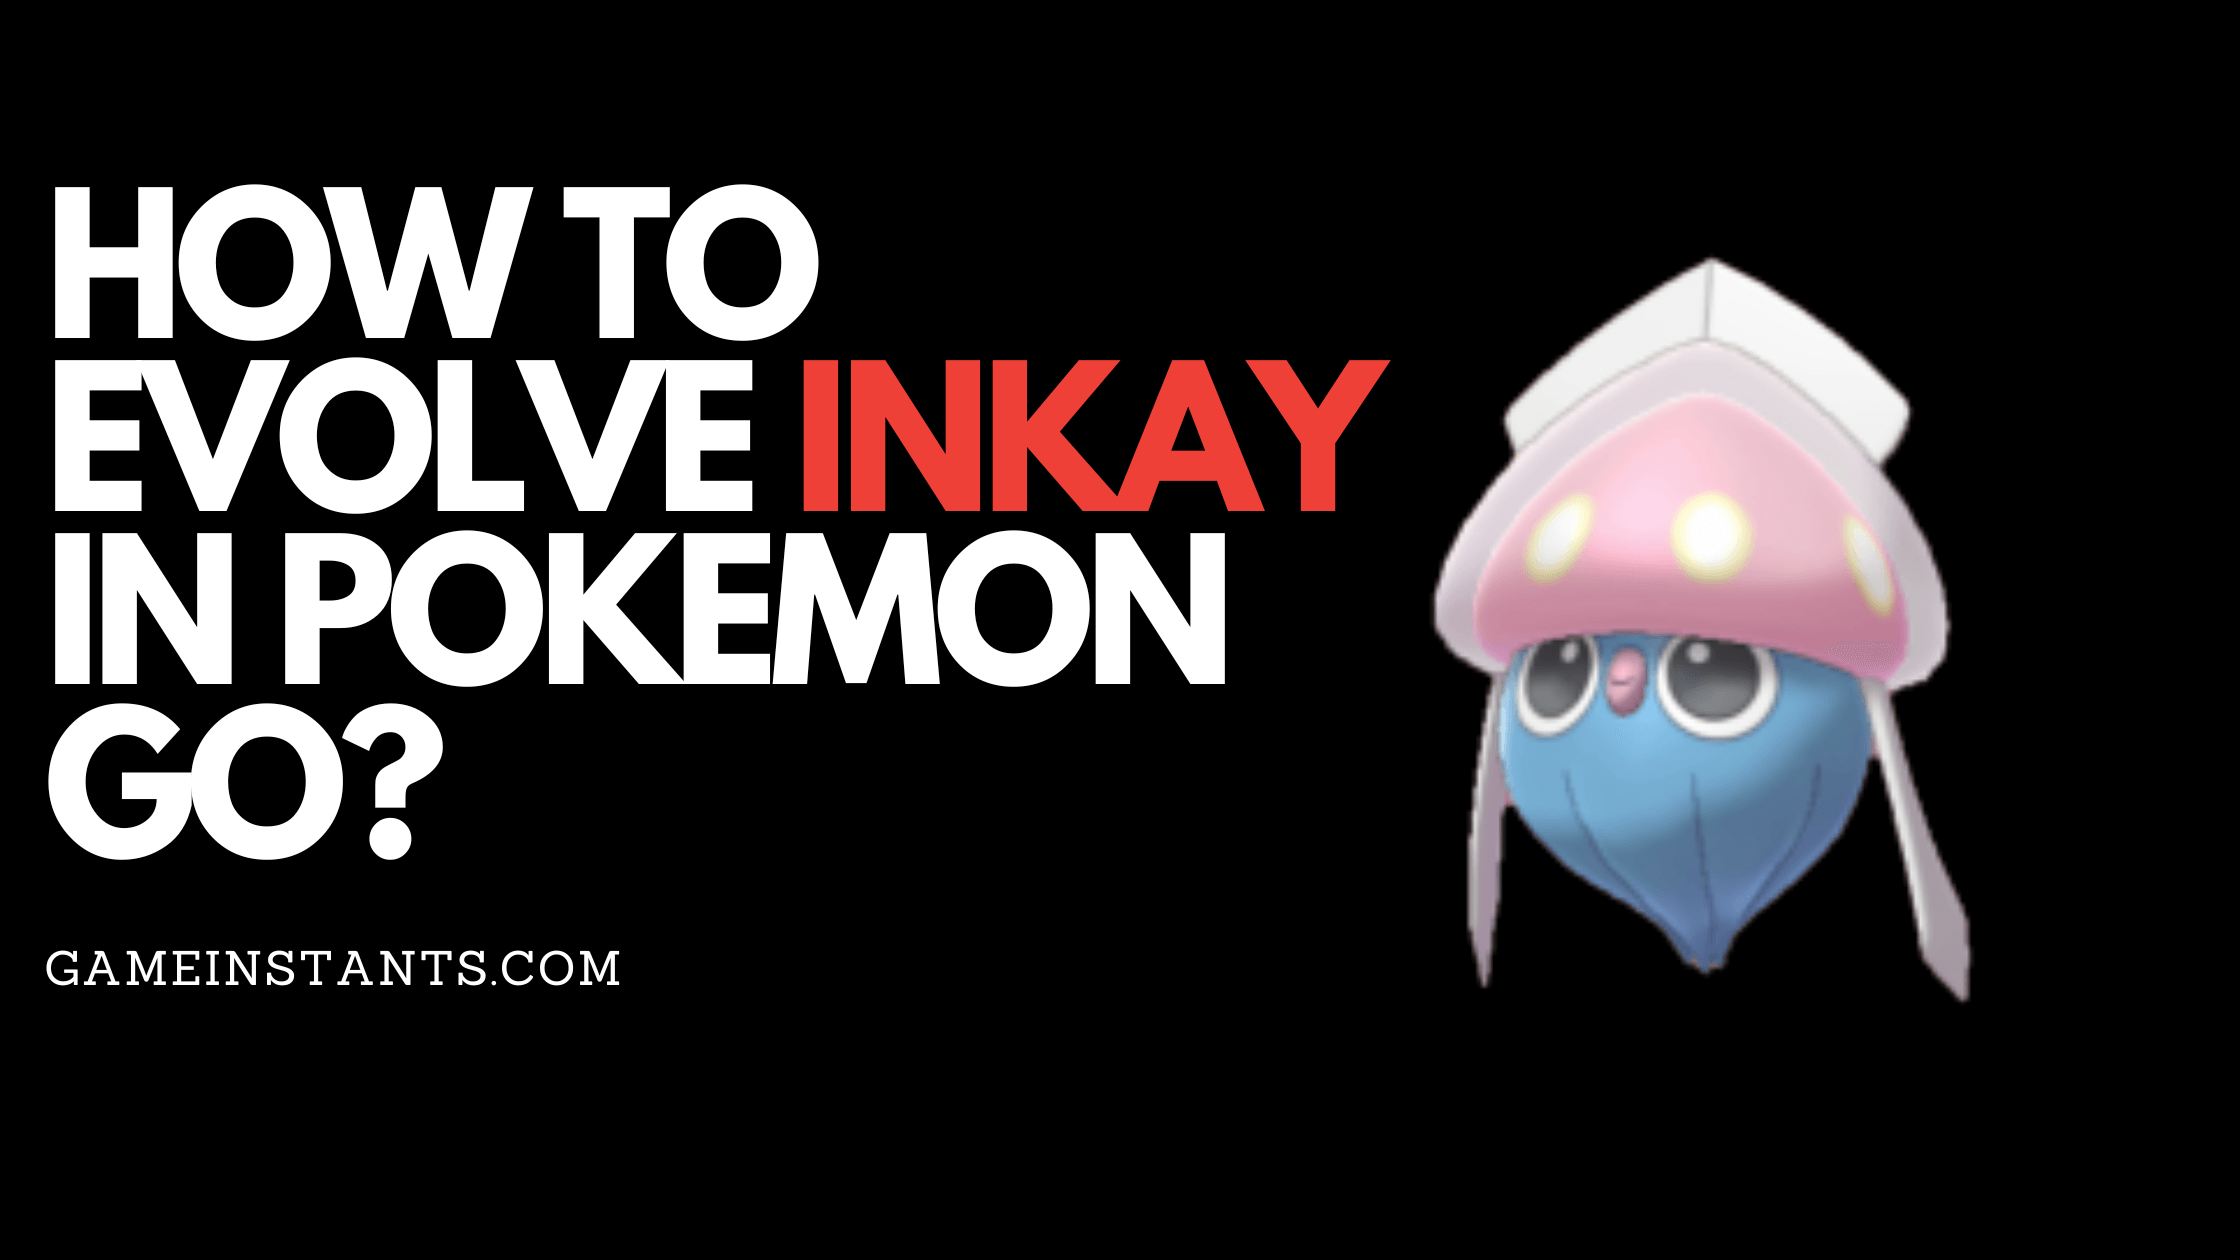 Evolve Inkay in Pokemon Go